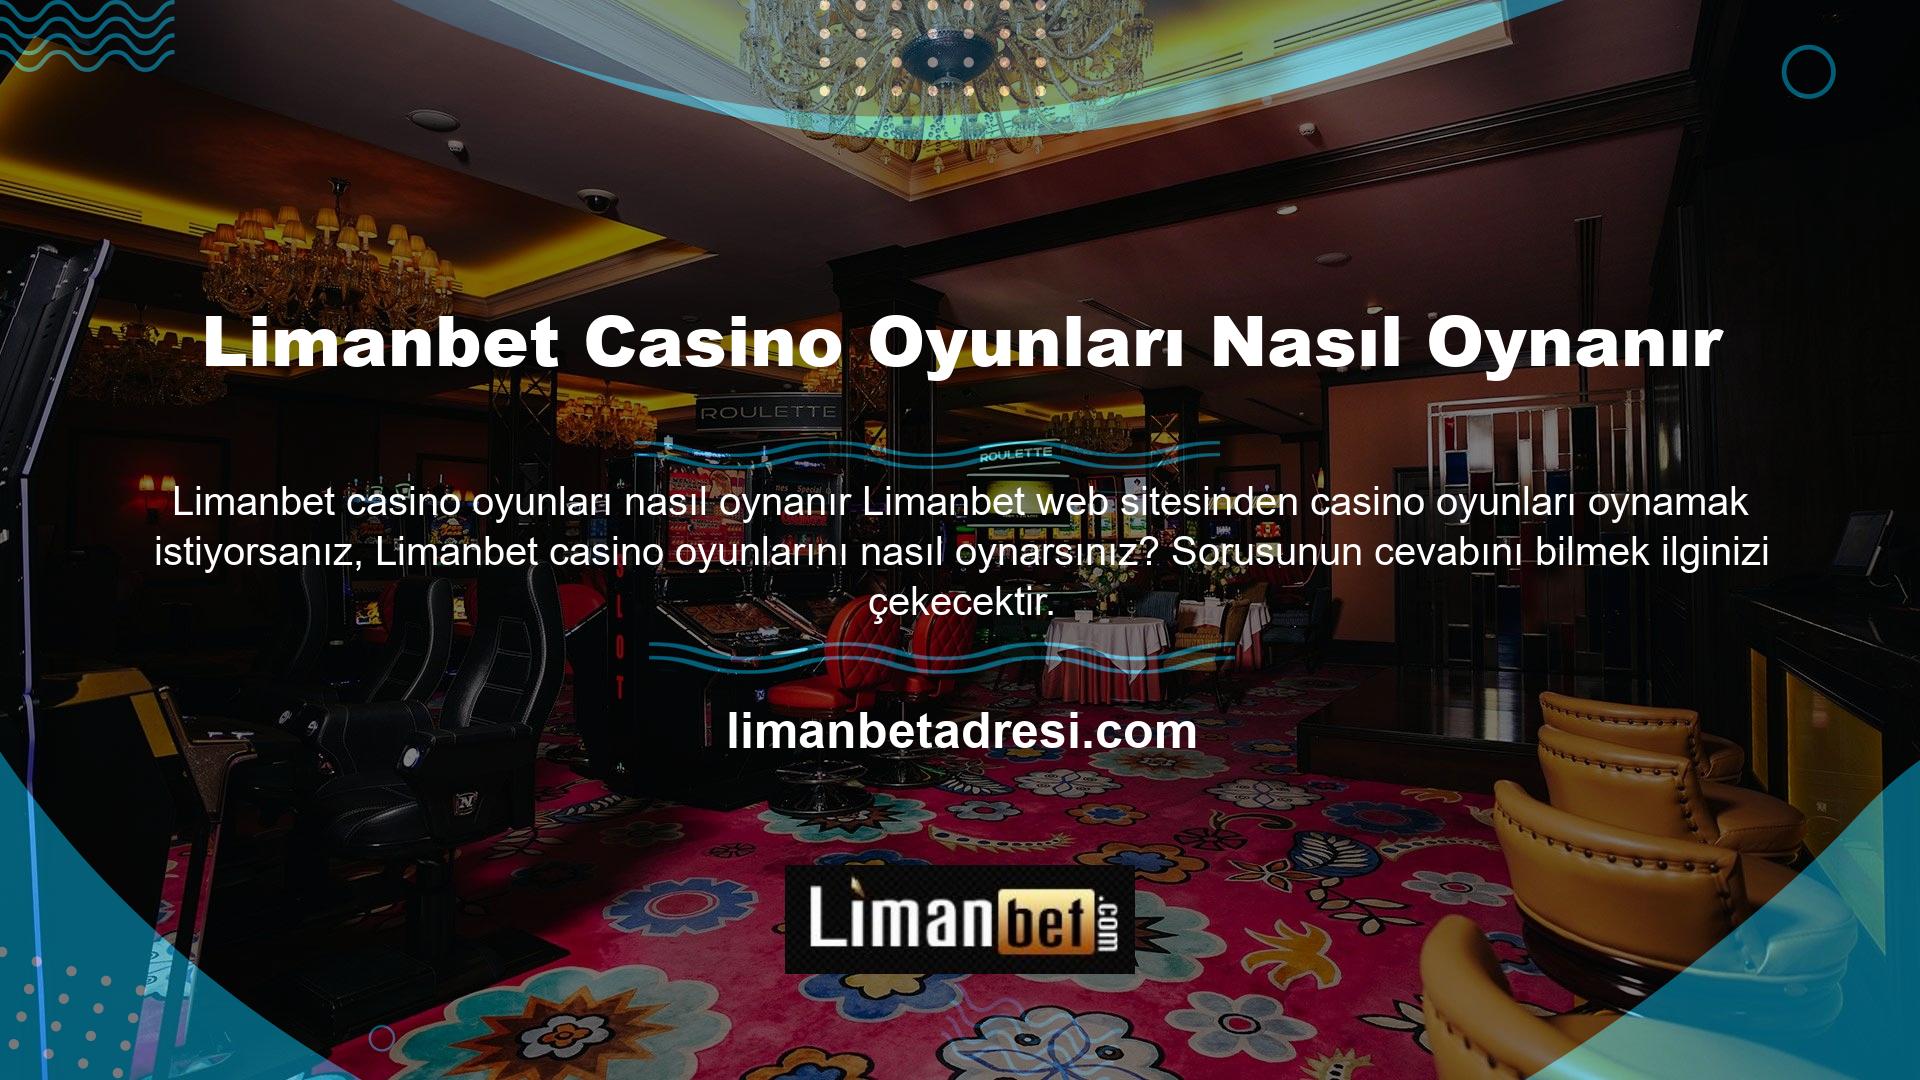 Limanbet web sitesinden casino oyunları oynamak isteyen kişilerin öncelikle siteye kayıt olması gerekmektedir